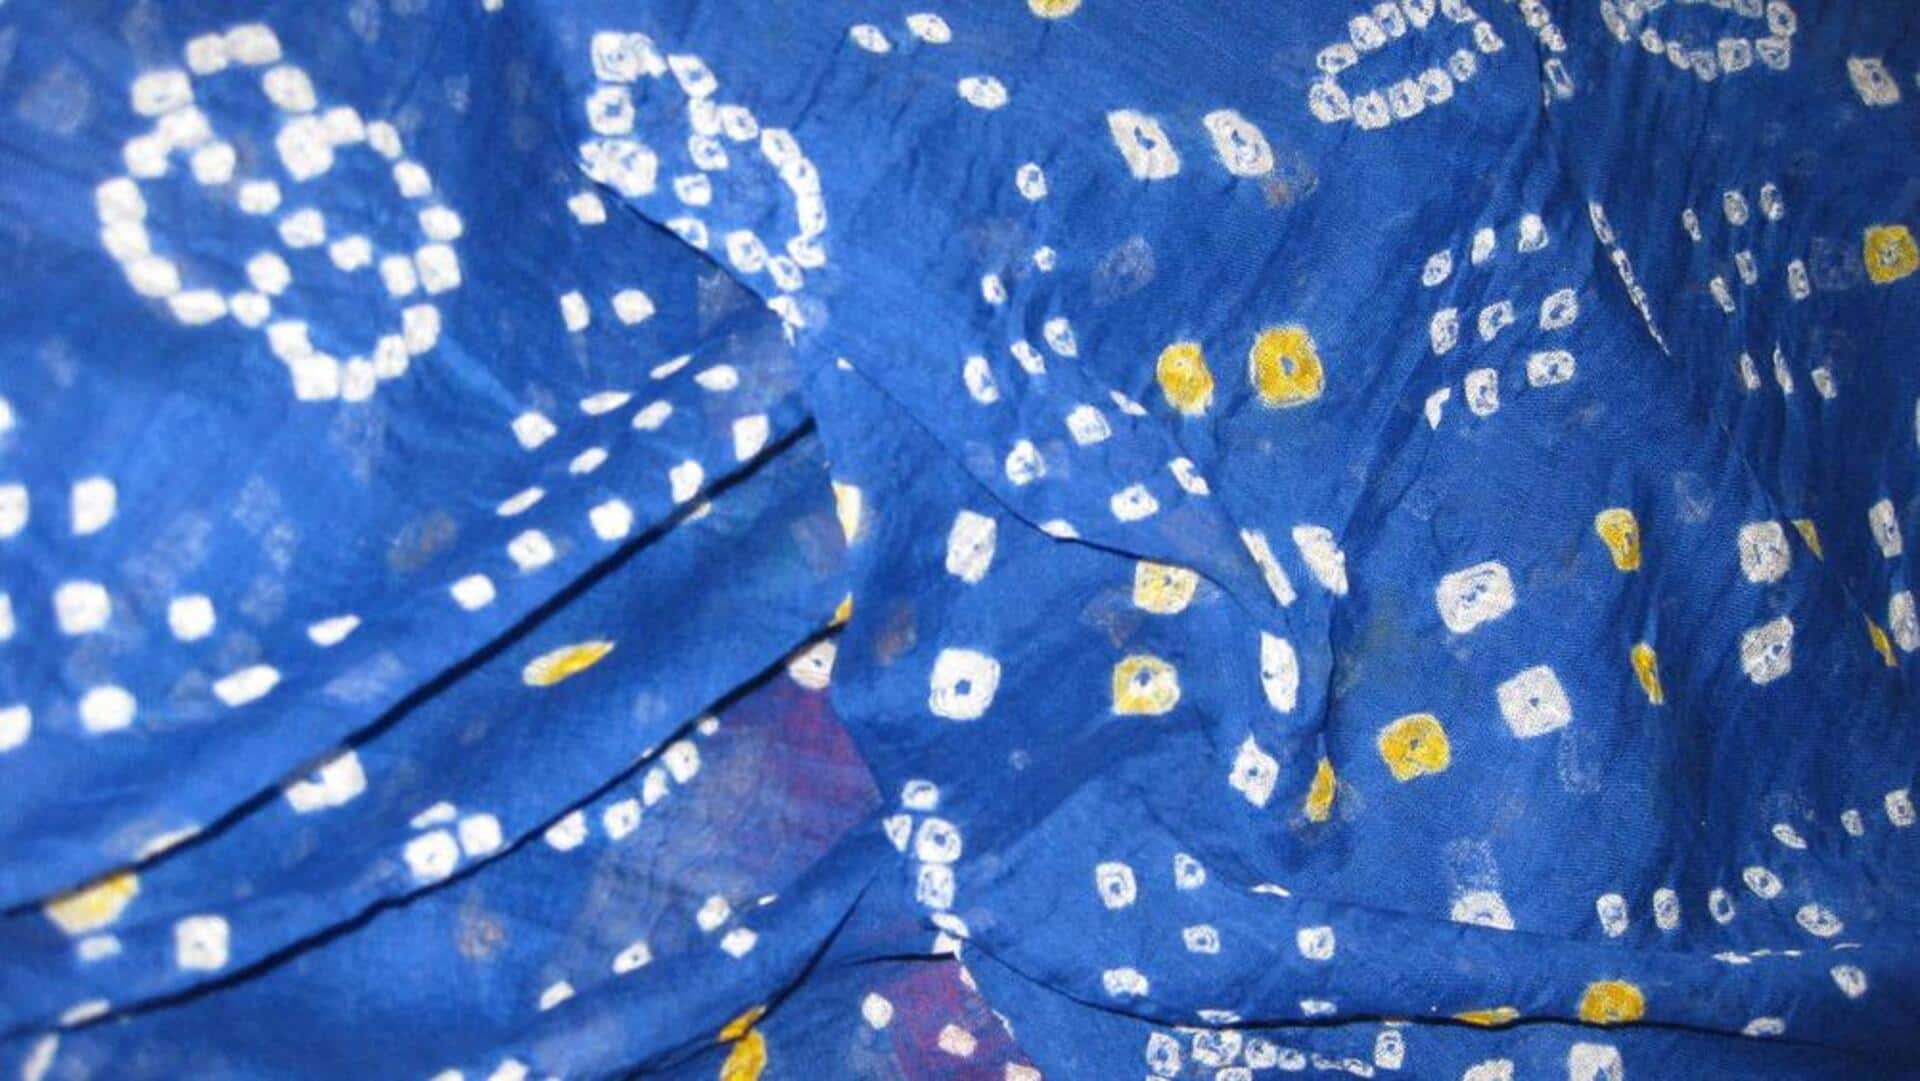 Bandhani reimagined: Examining this modern tie-dye